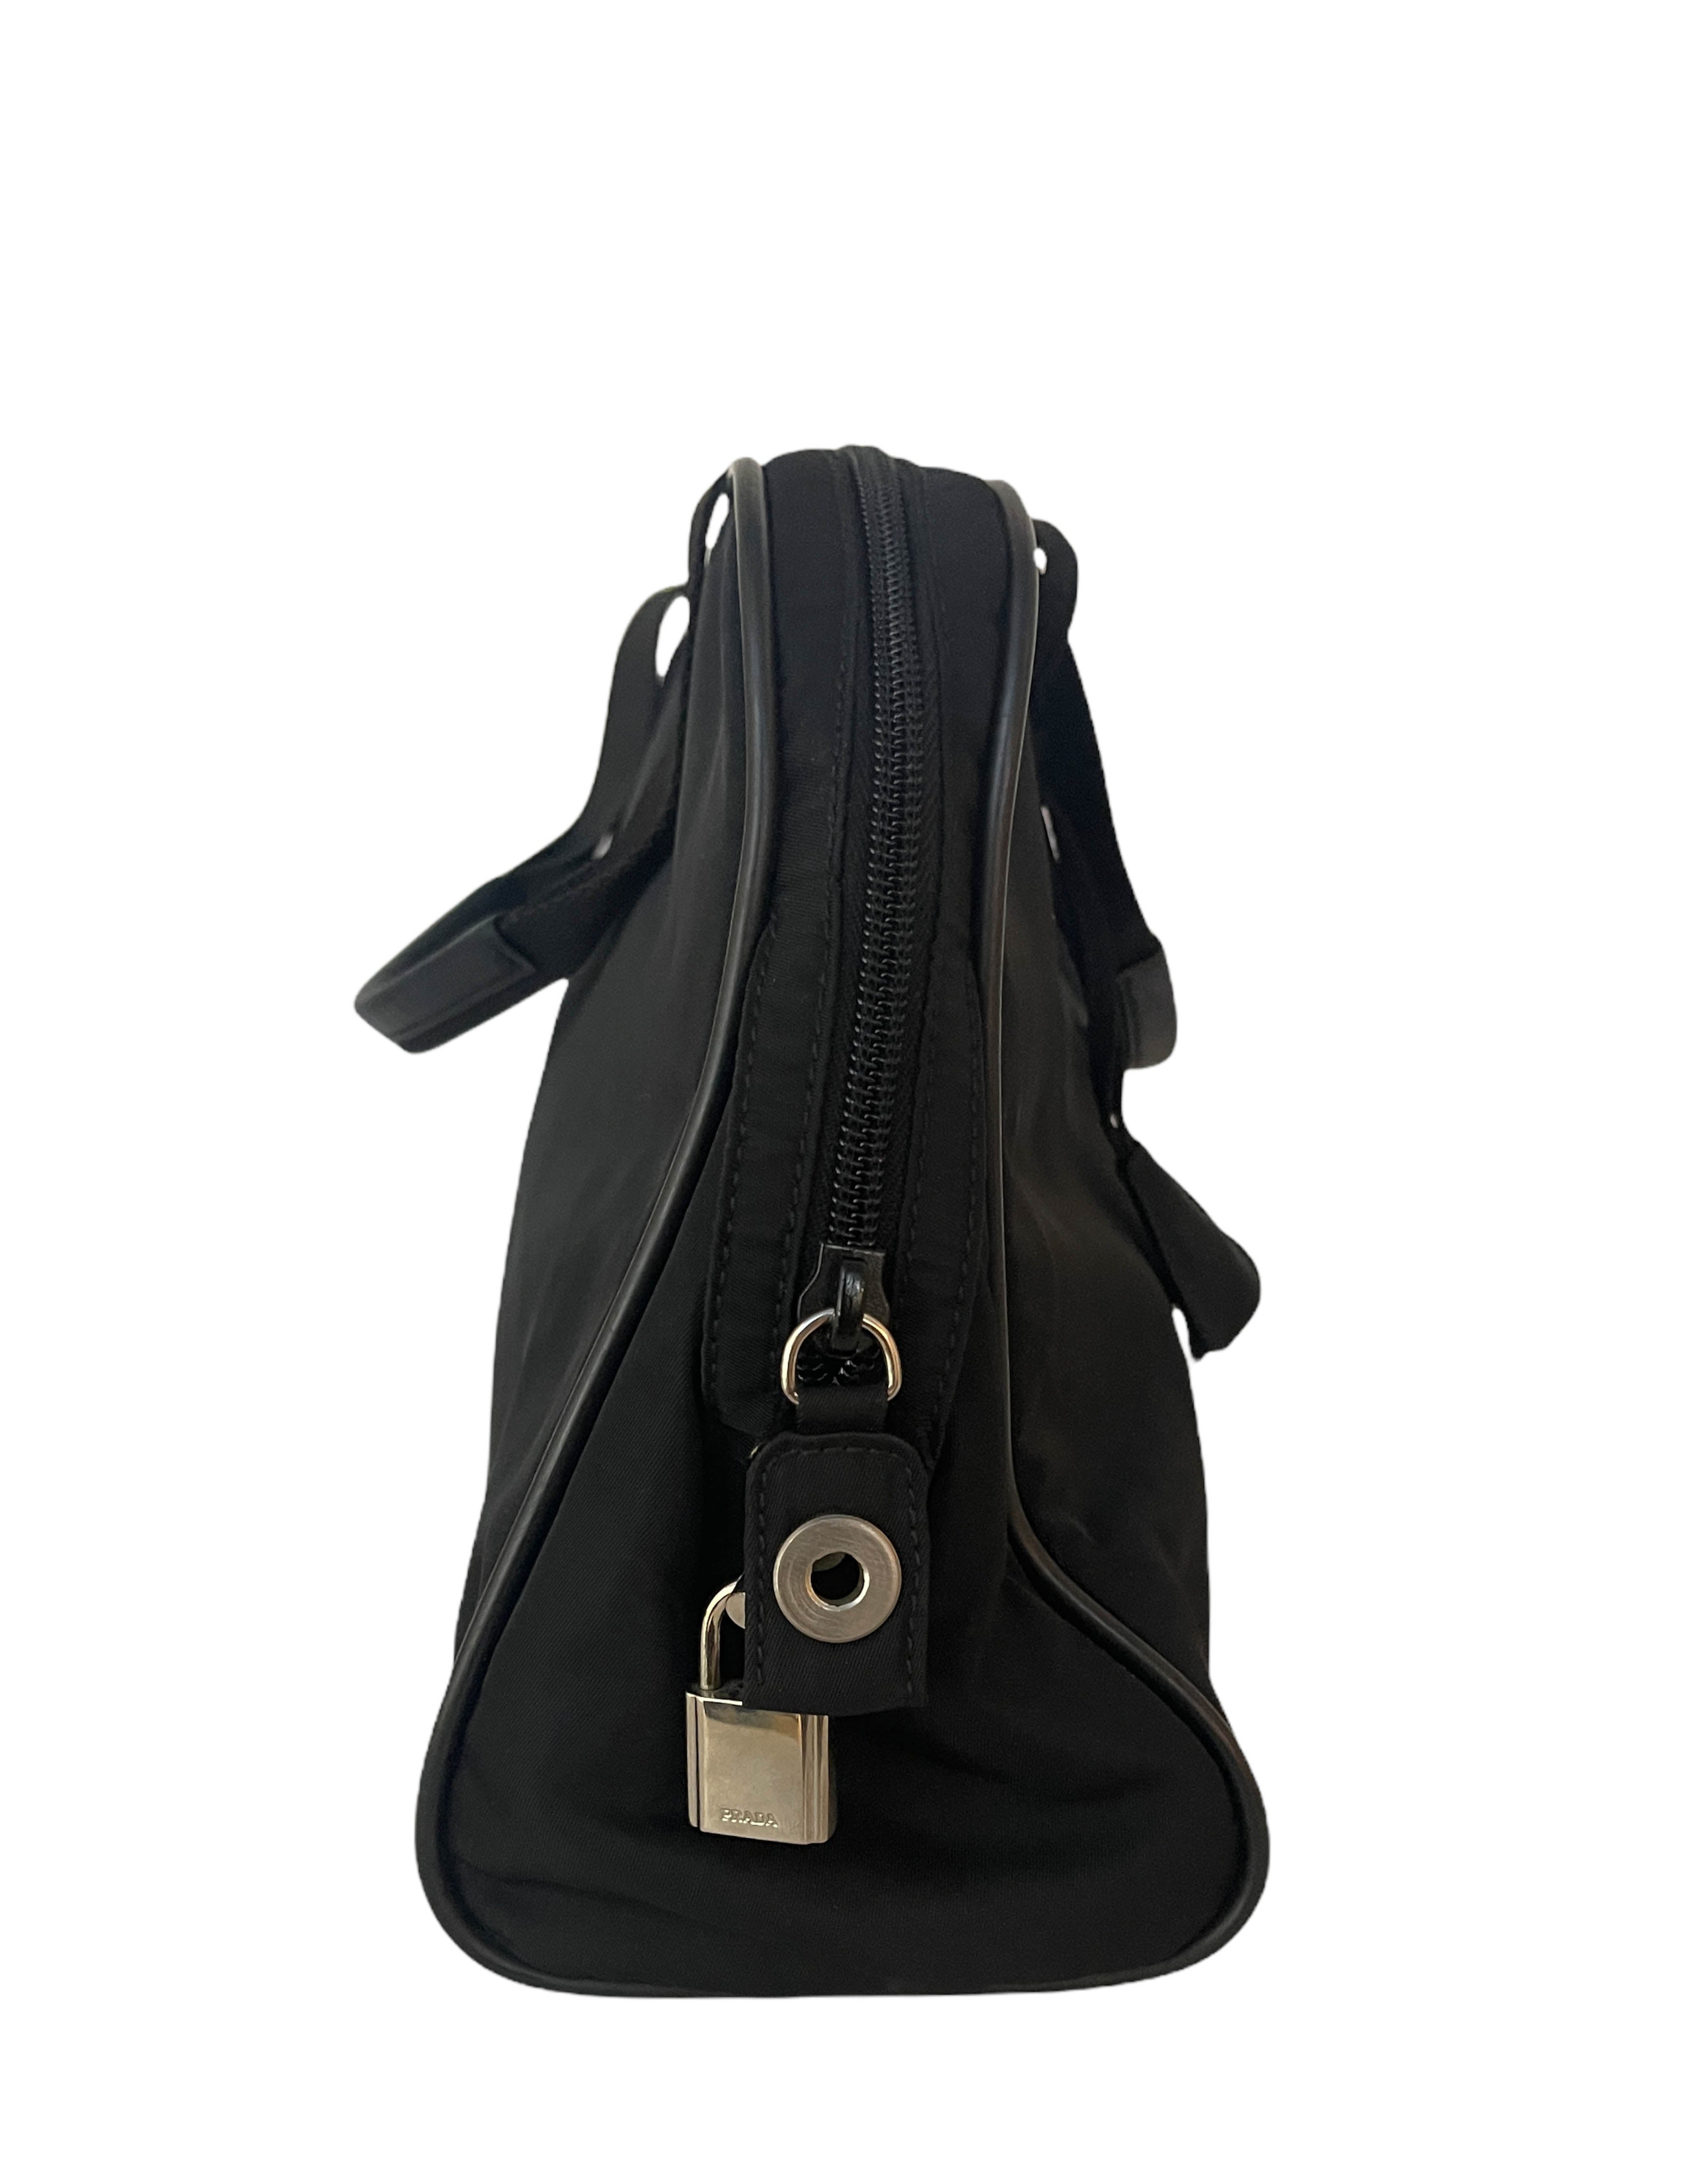 Prada Vintage Black Tessuto Nylon Handbag